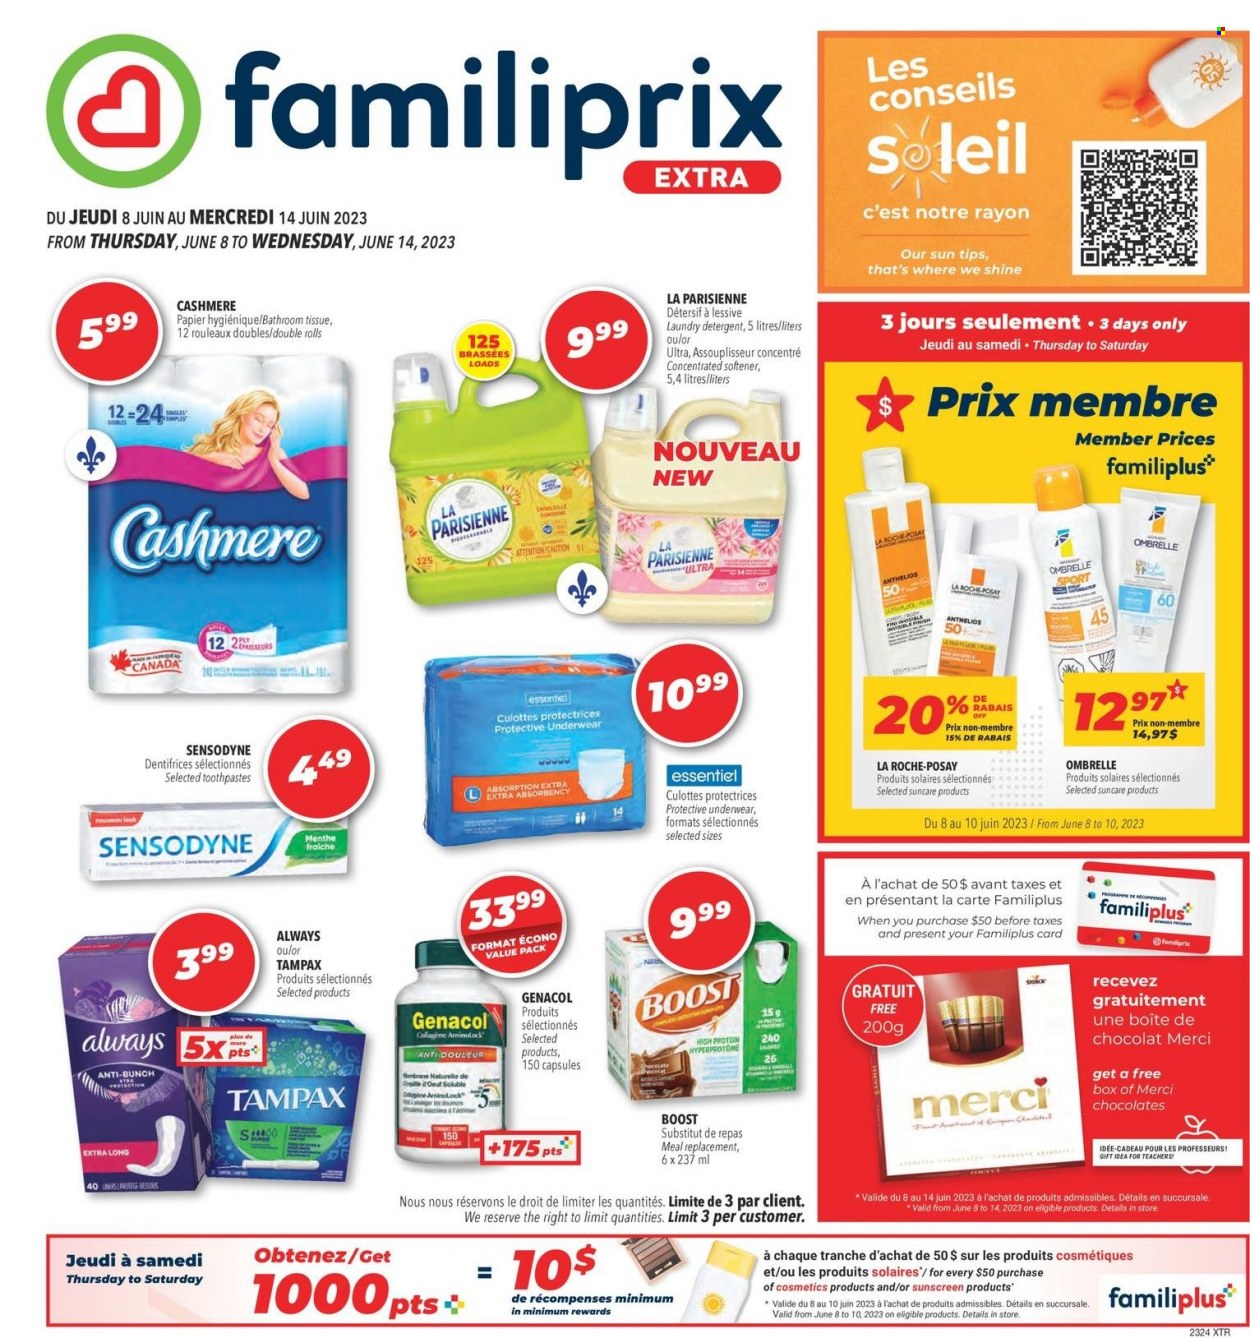 Familiprix Santé flyer  - June 08, 2023 - June 14, 2023.